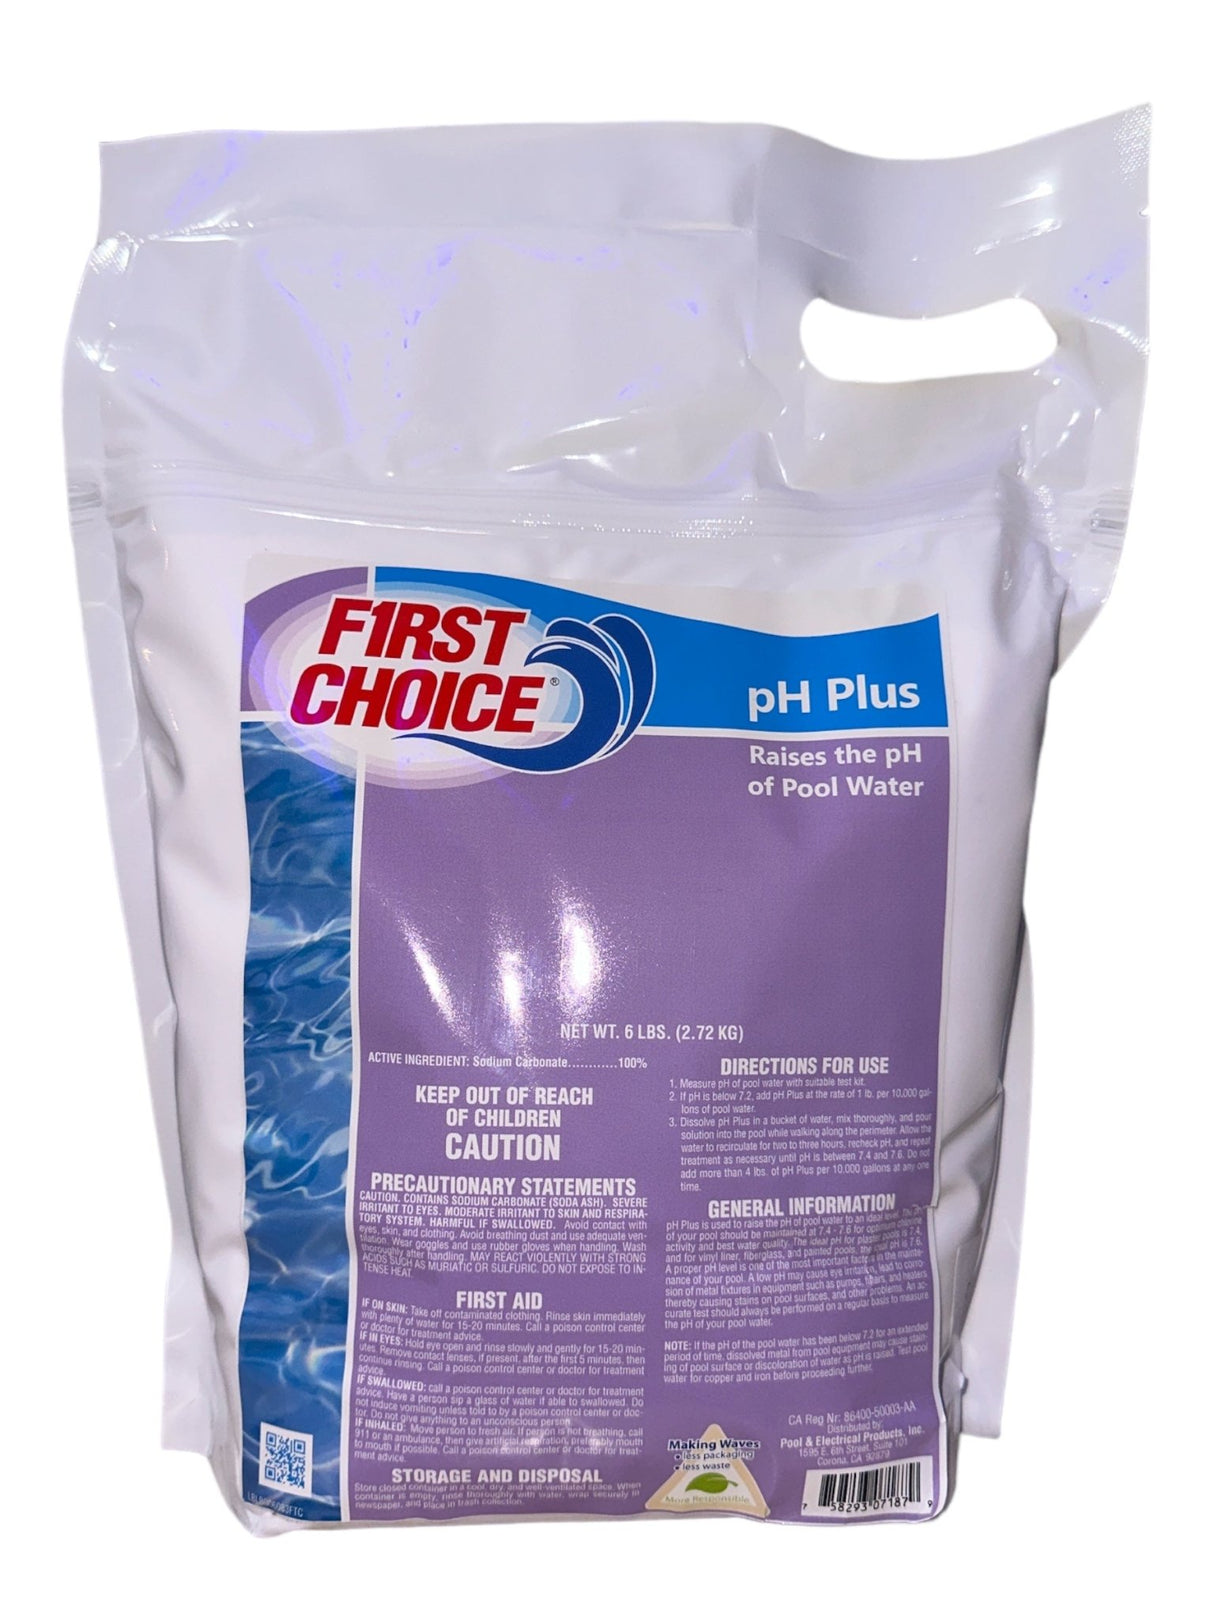 First Choice pH Plus (6lbs bag)